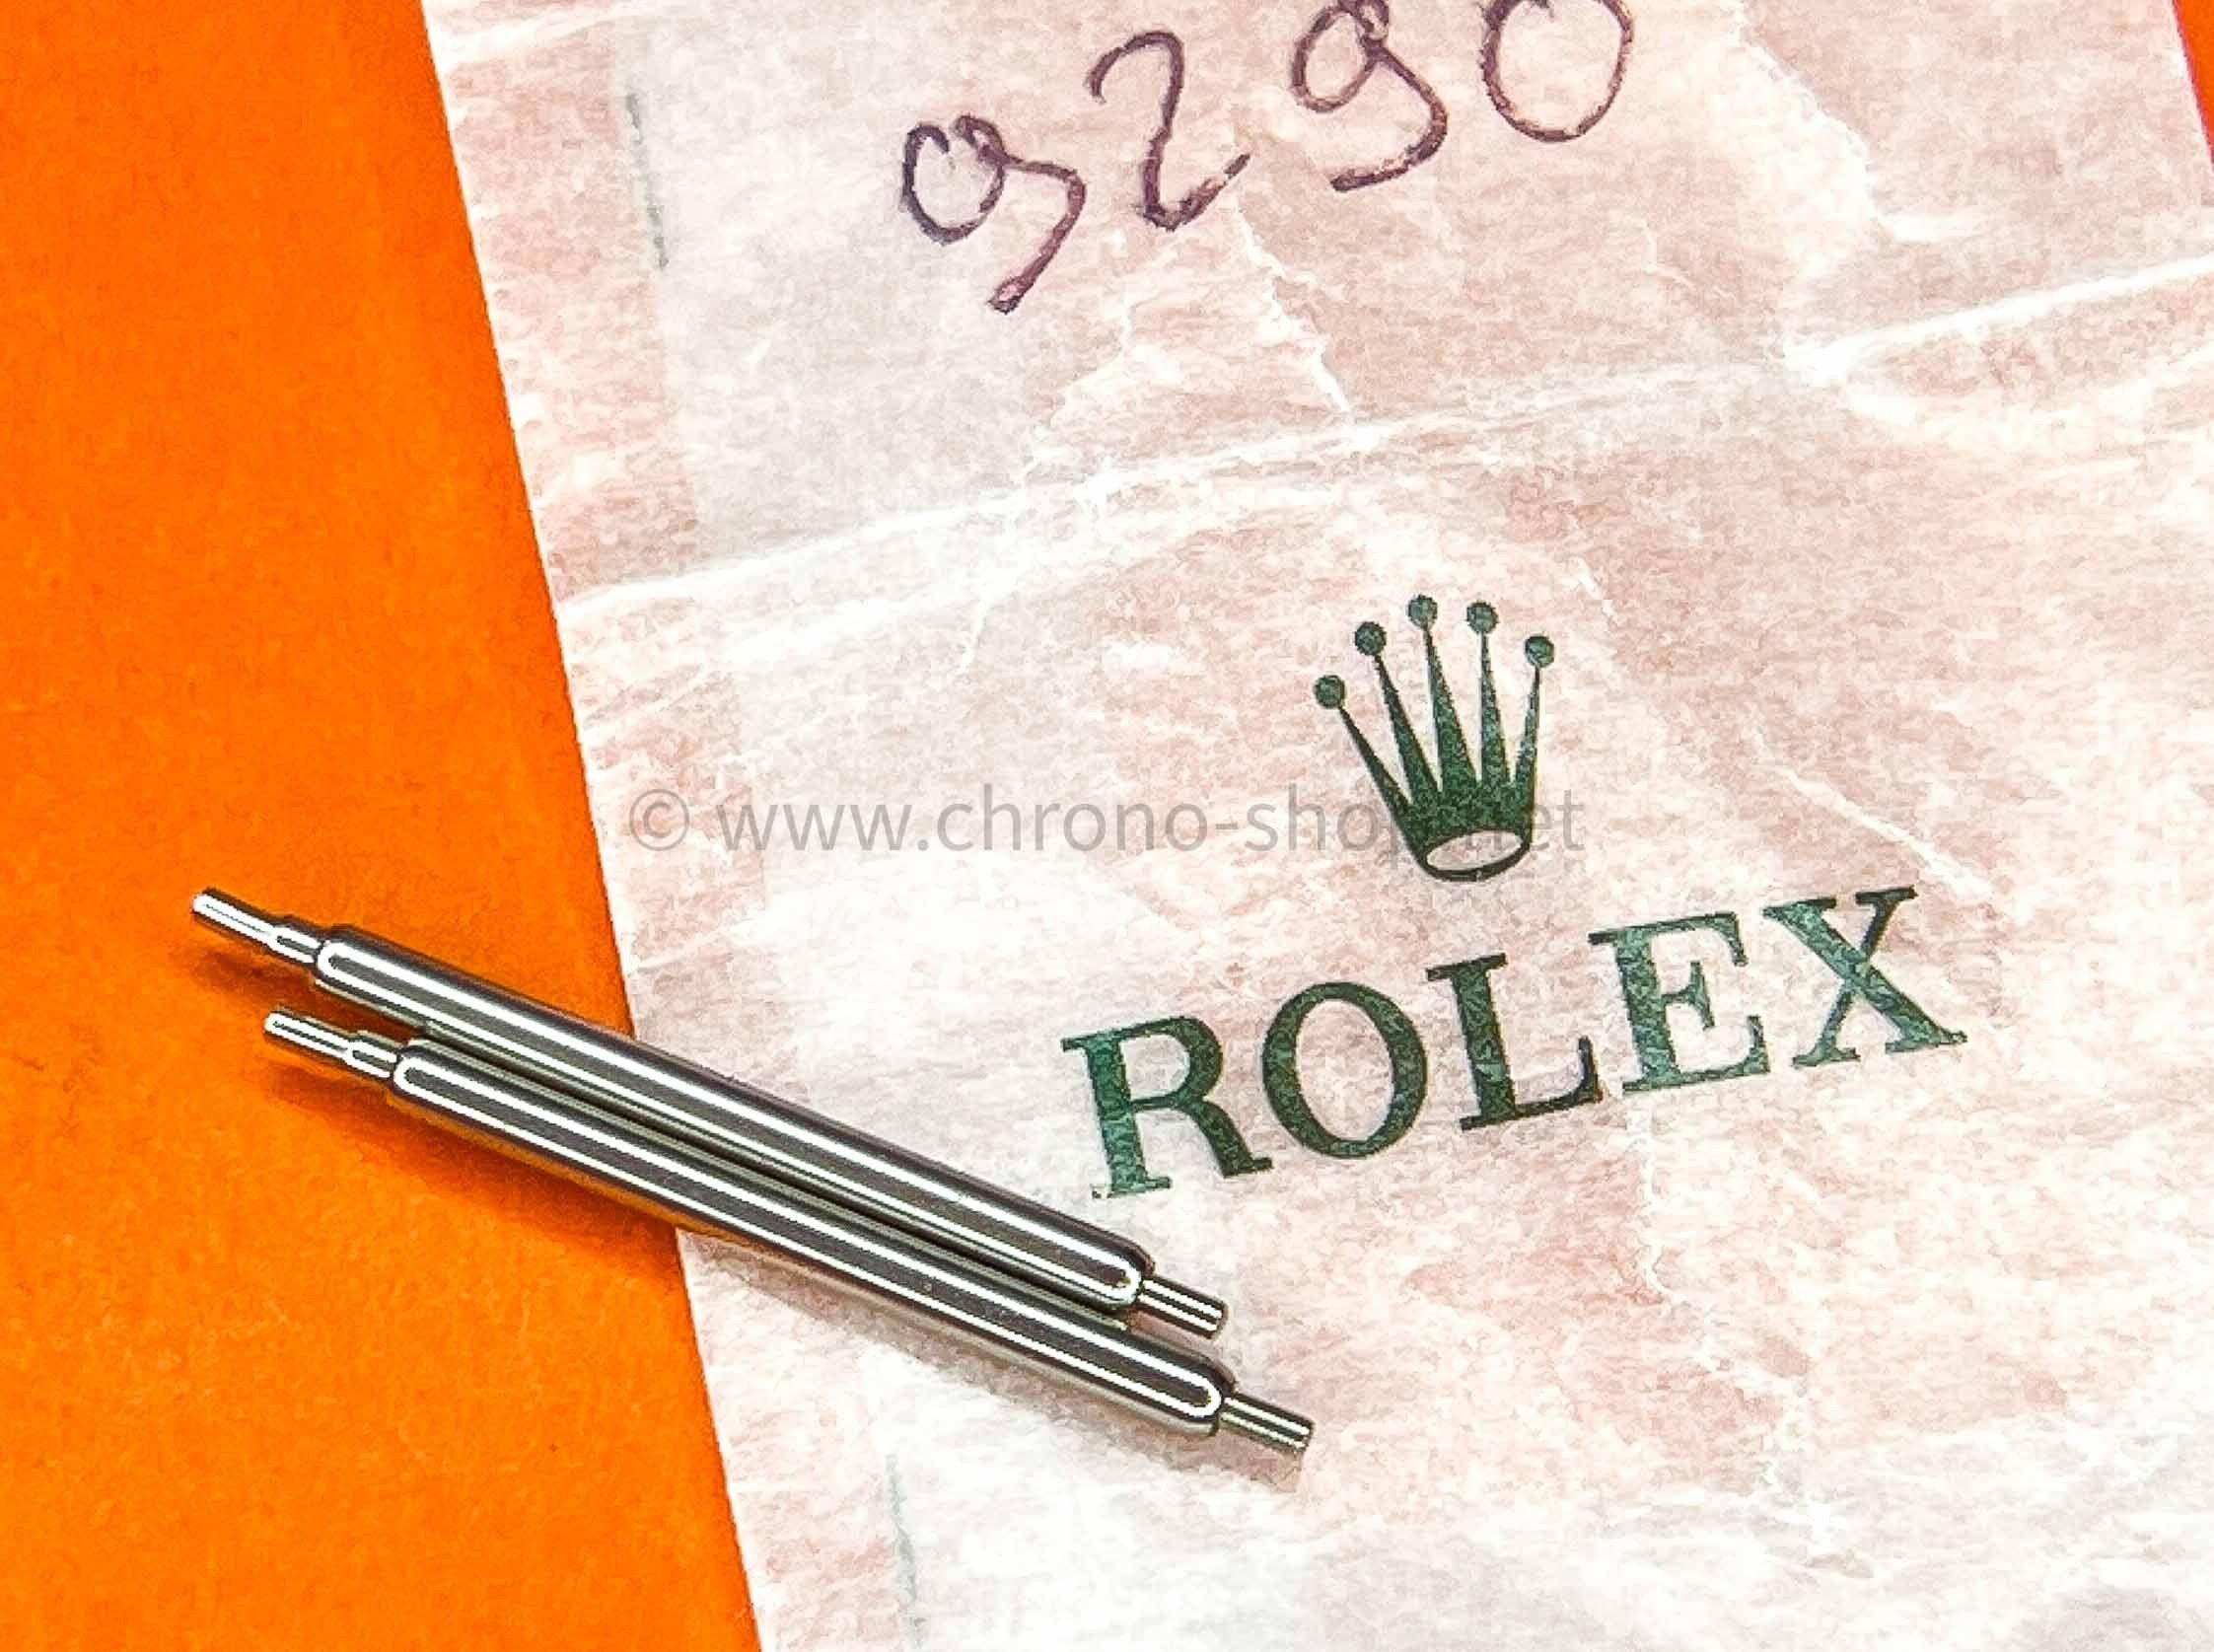 Rolex originales paire de pompes acier goupilles Ref 23-9290 bracelet 20mm montres